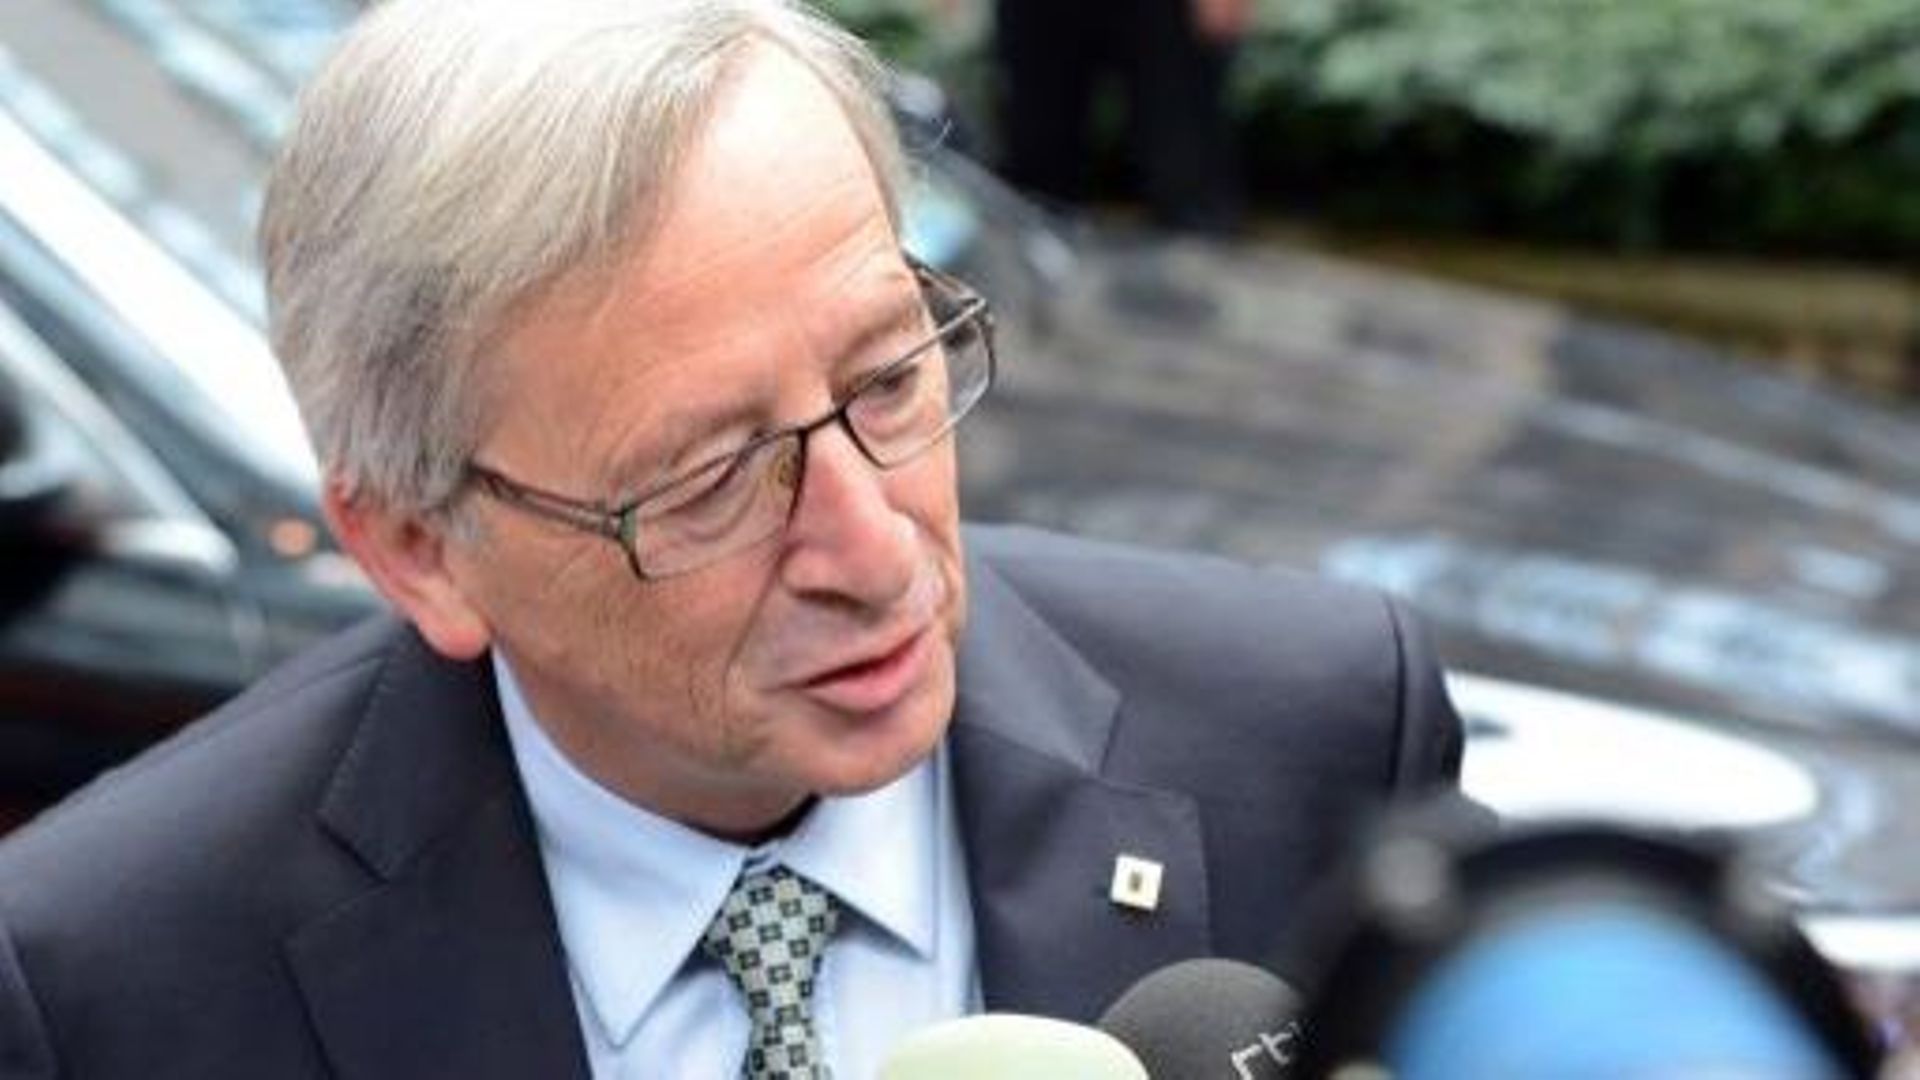 "J'ai envie de travailler pour le Luxembourg et c'est vrai", a déclaré Jean-Claude Juncker, à qui l'on reproche d'avoir délaissé son pays au profit de l'Europe.